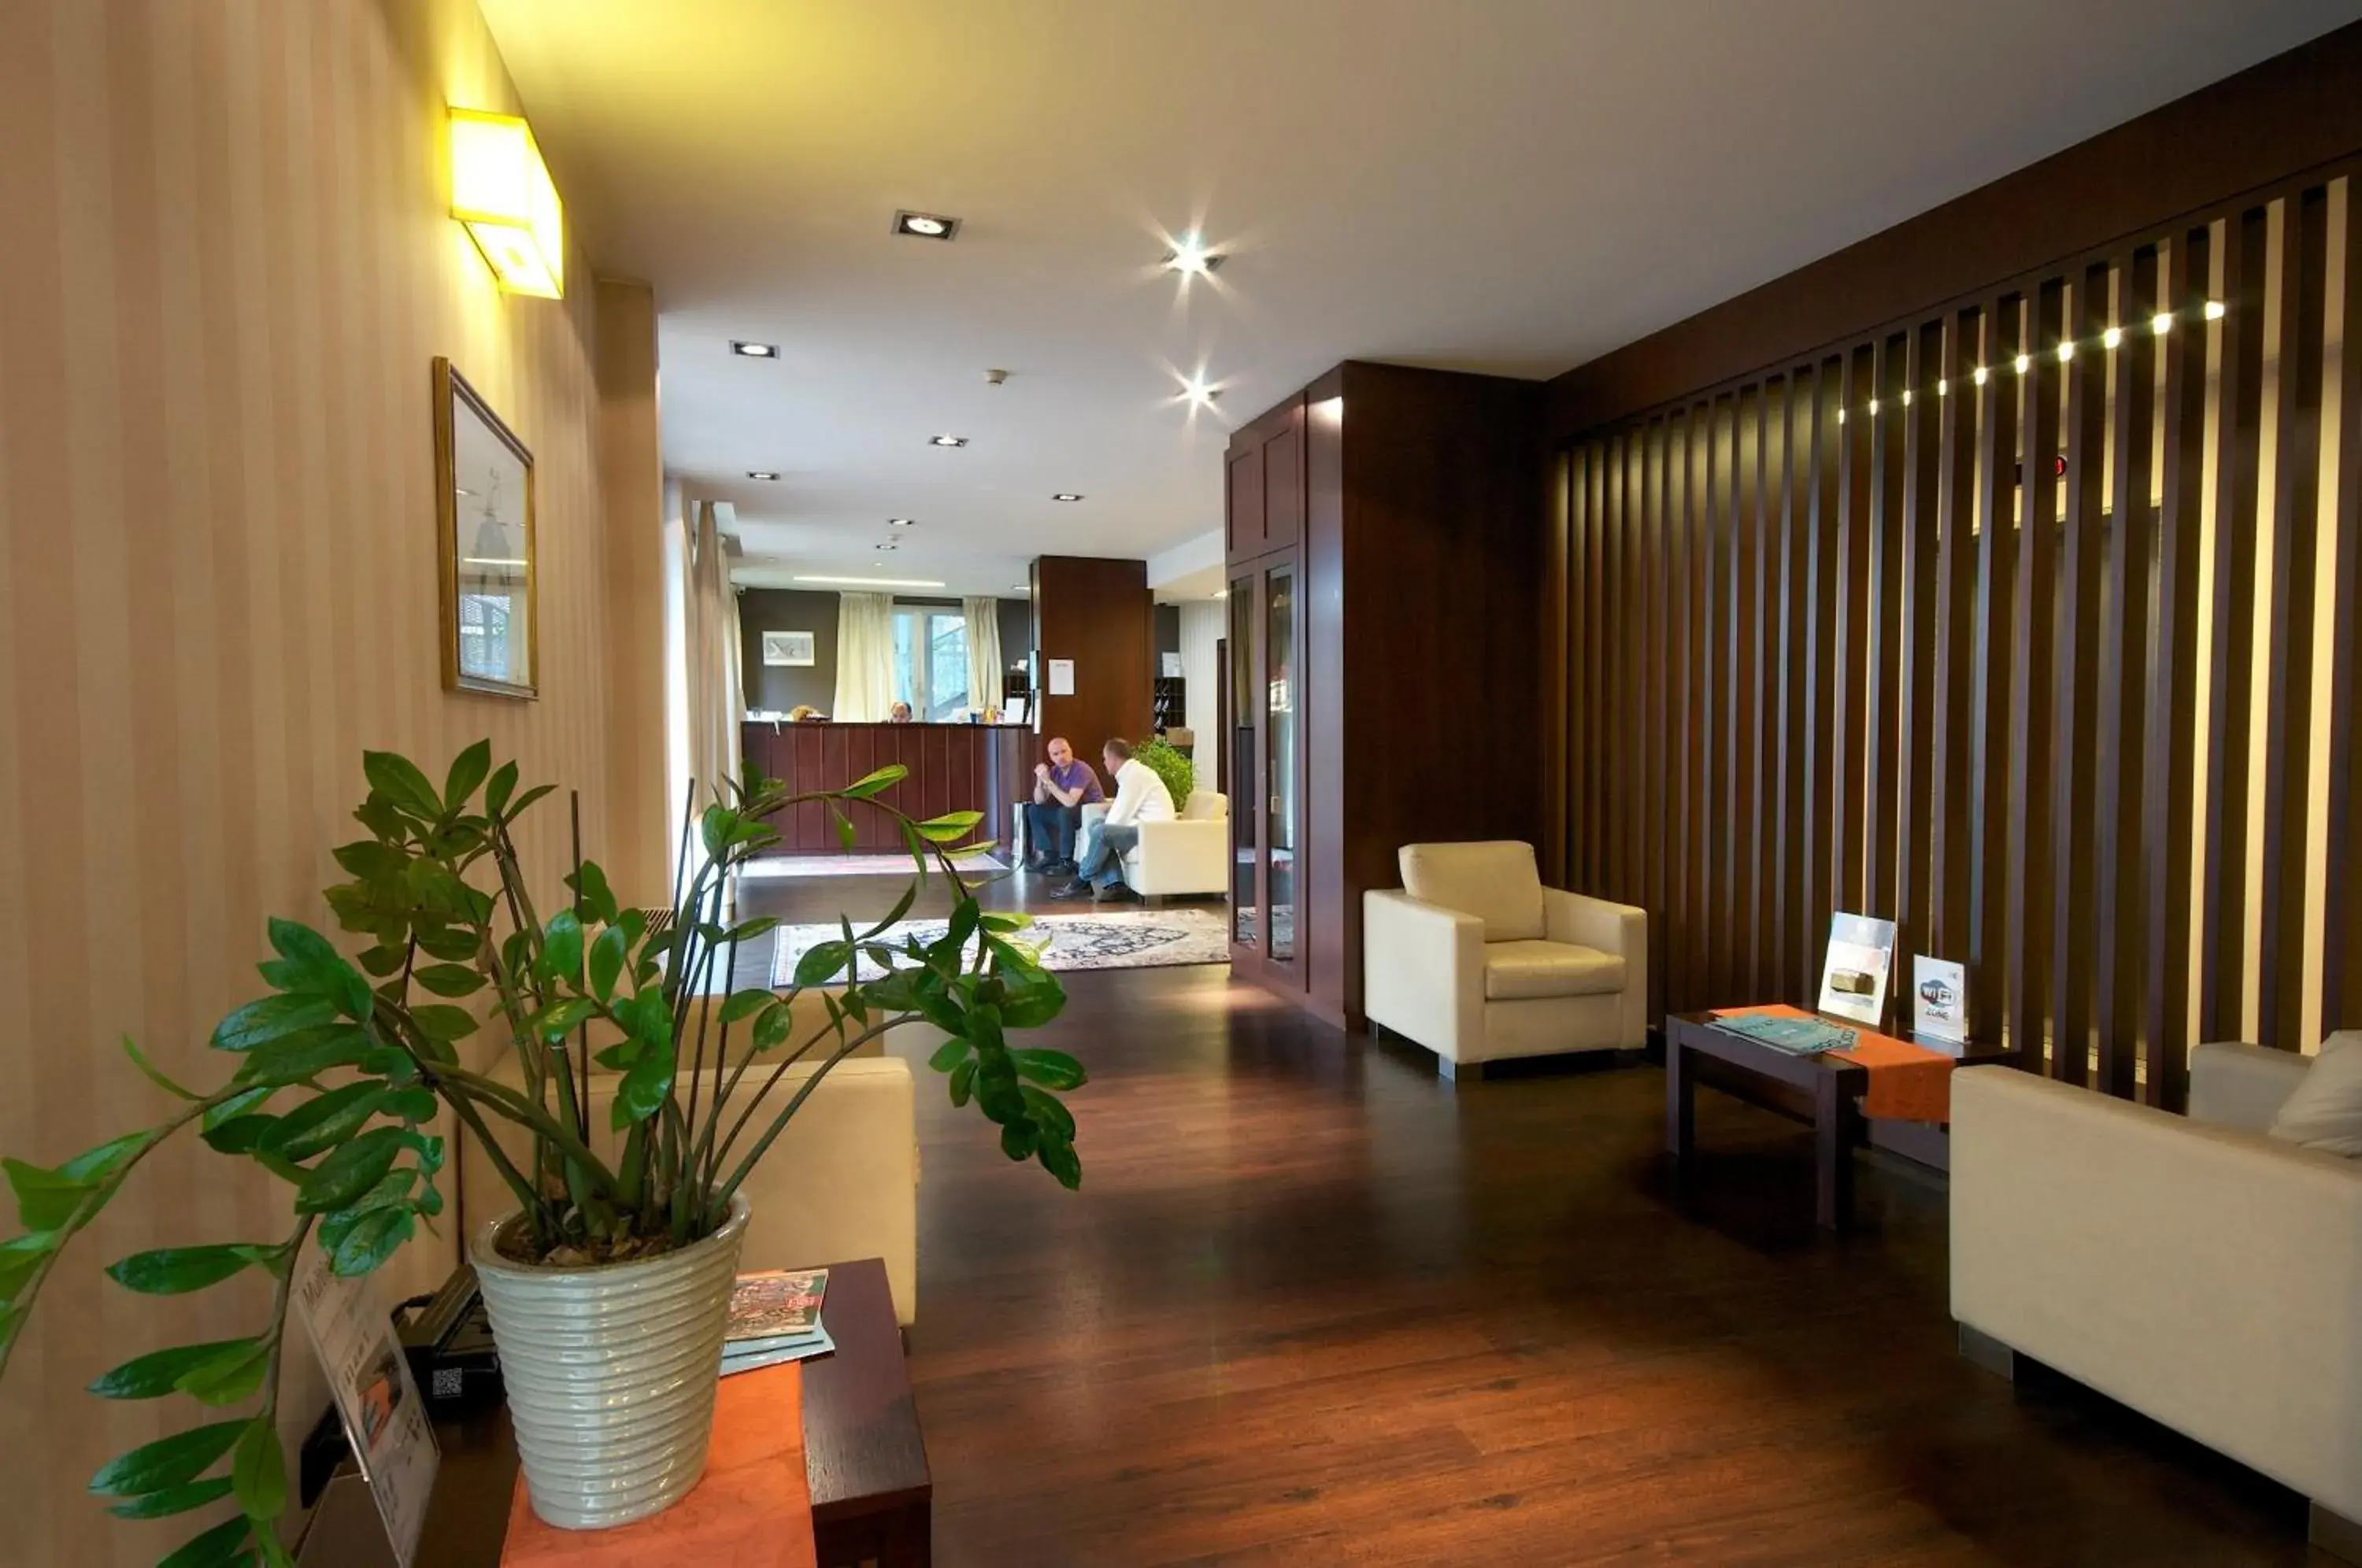 Lobby or reception, Lobby/Reception in Hotel 2C